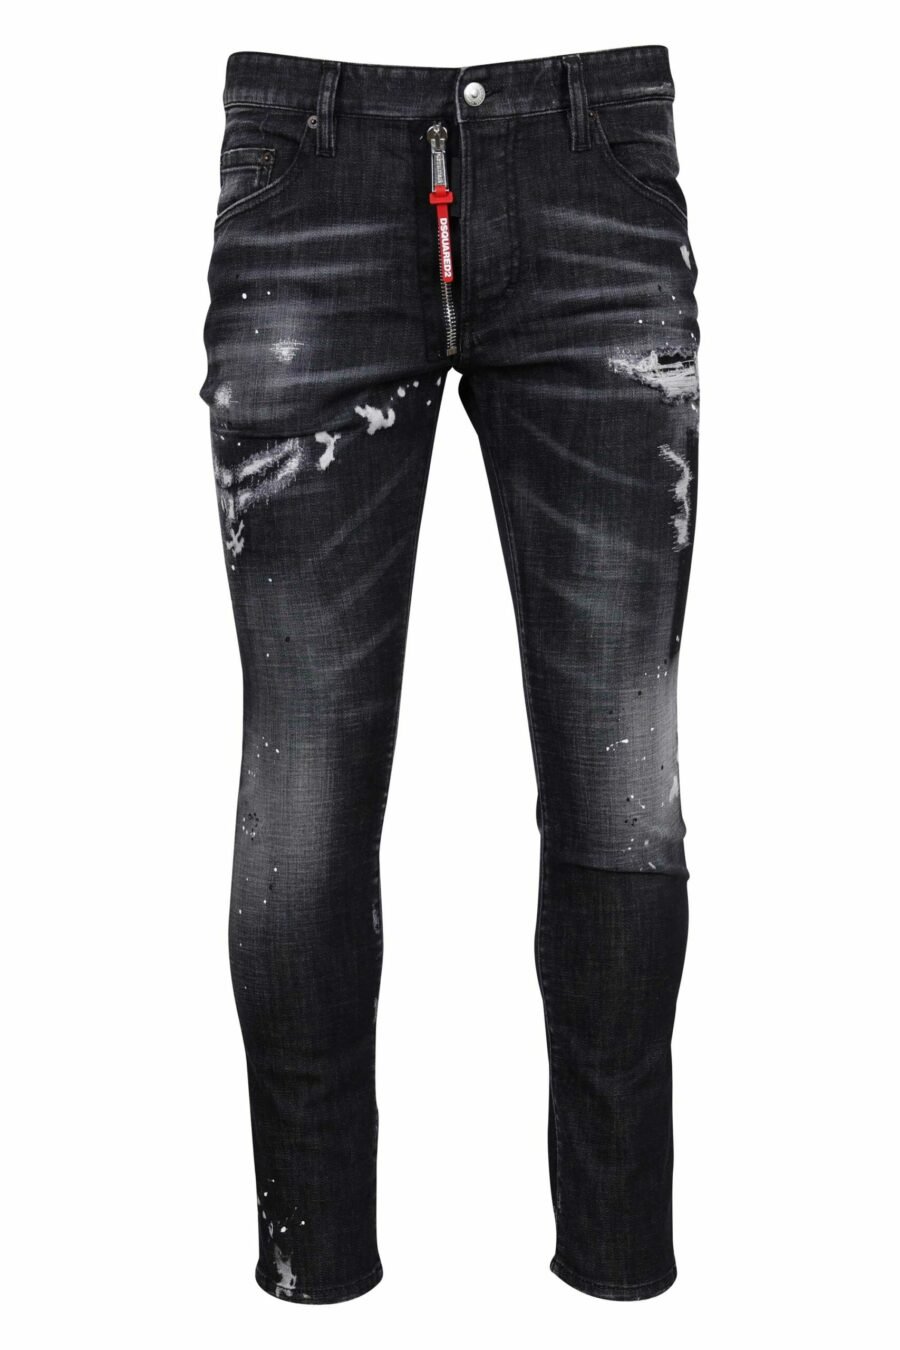 Pantalon noir "skater jean" déchiré et semi-usé - 8054148300746 échelonné